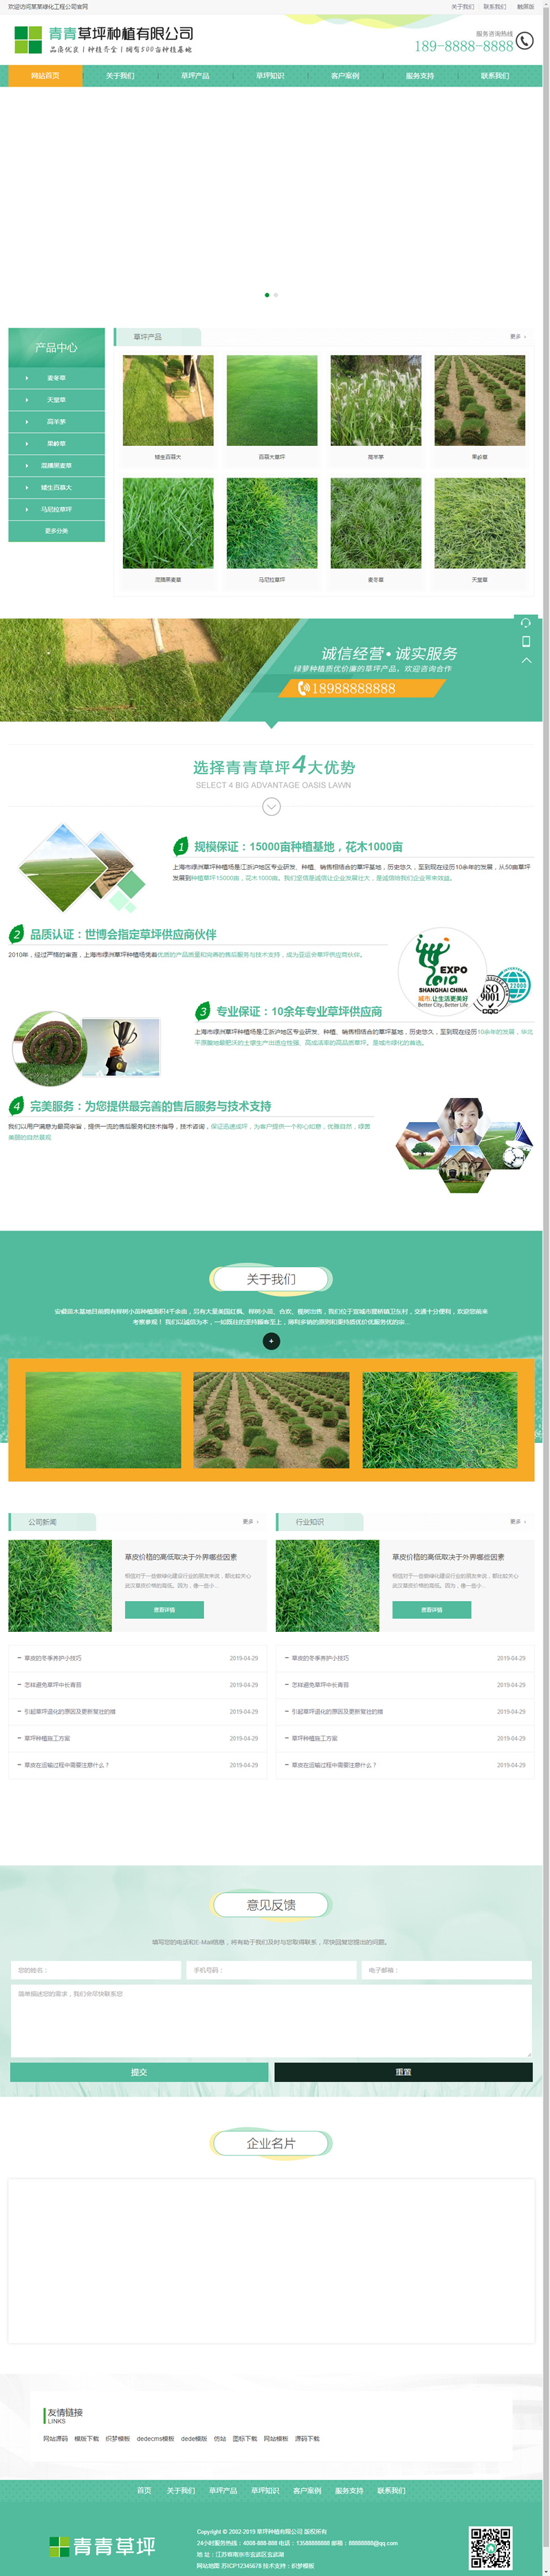 织梦CMS 带手机版苗木草坪种植类网站模板